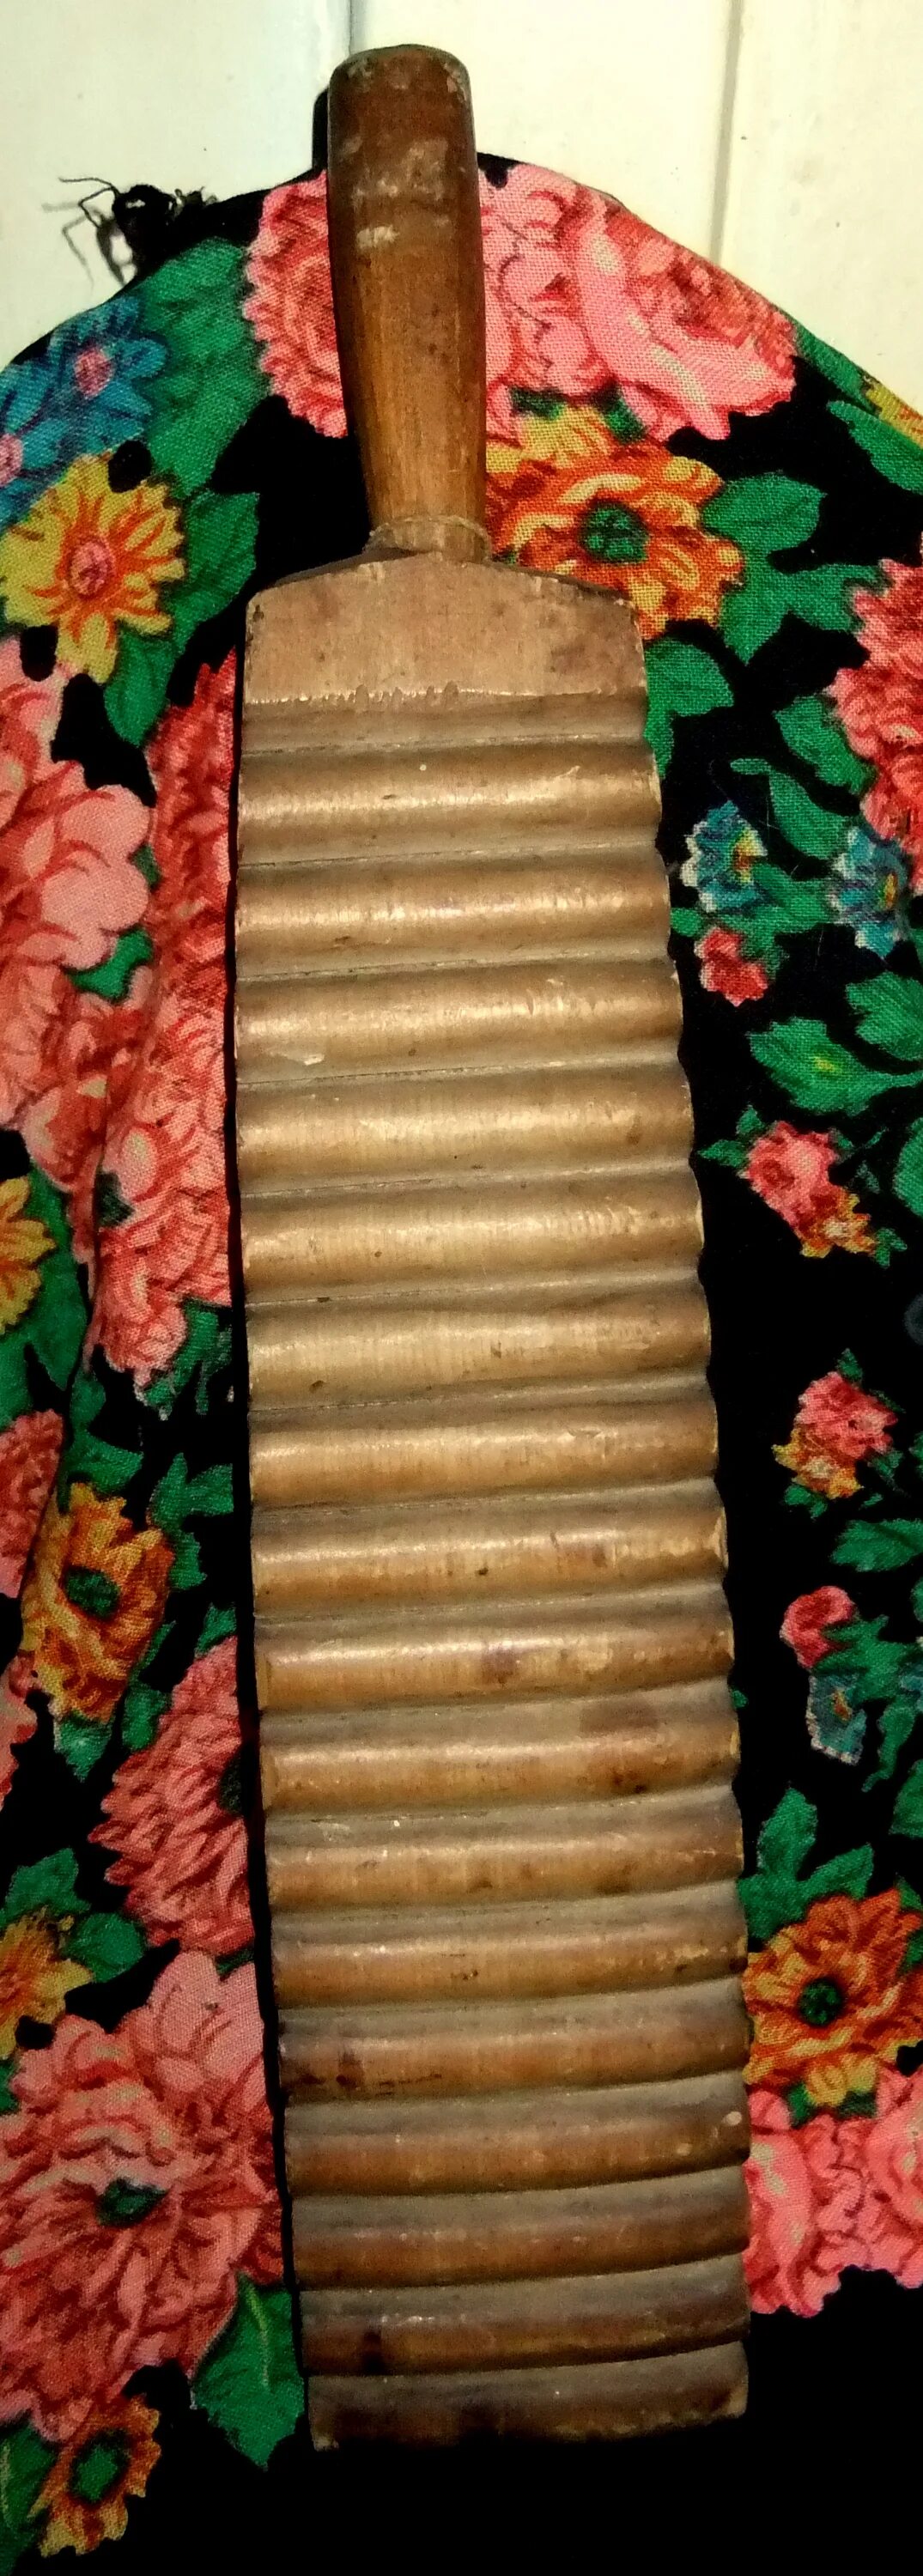 Рубель(ребрак, пральник). Старинный деревянный утюг Рубель. Рубель для глажки белья в старину. Рубель Валек музыкальный инструмент. Рубель для глажки